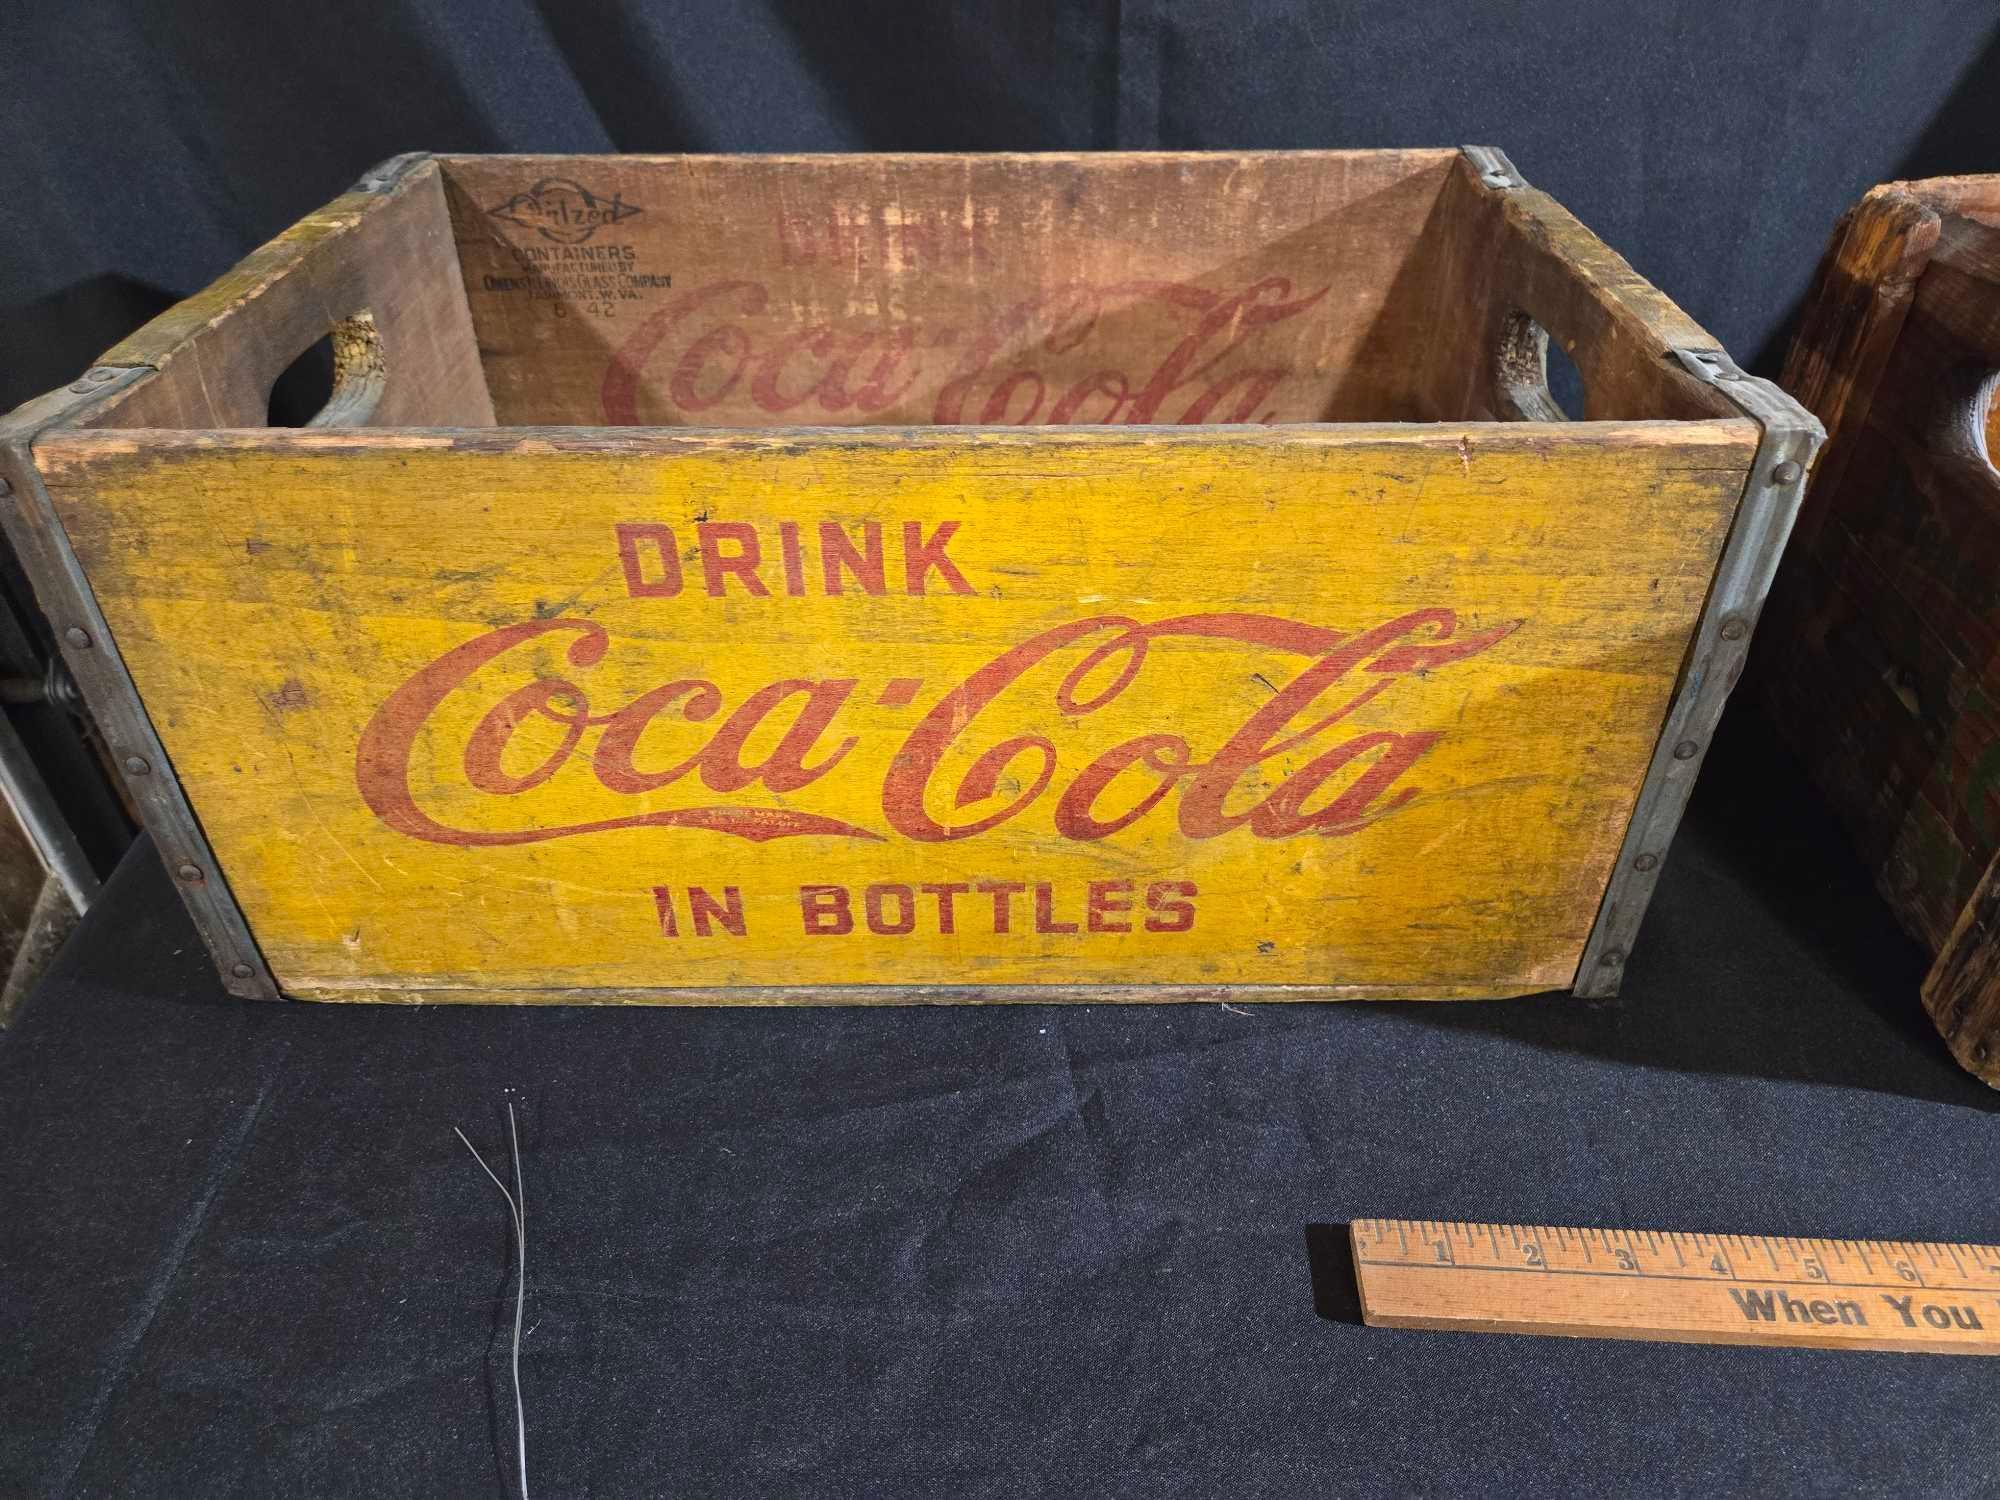 2 Coca Cola Crates